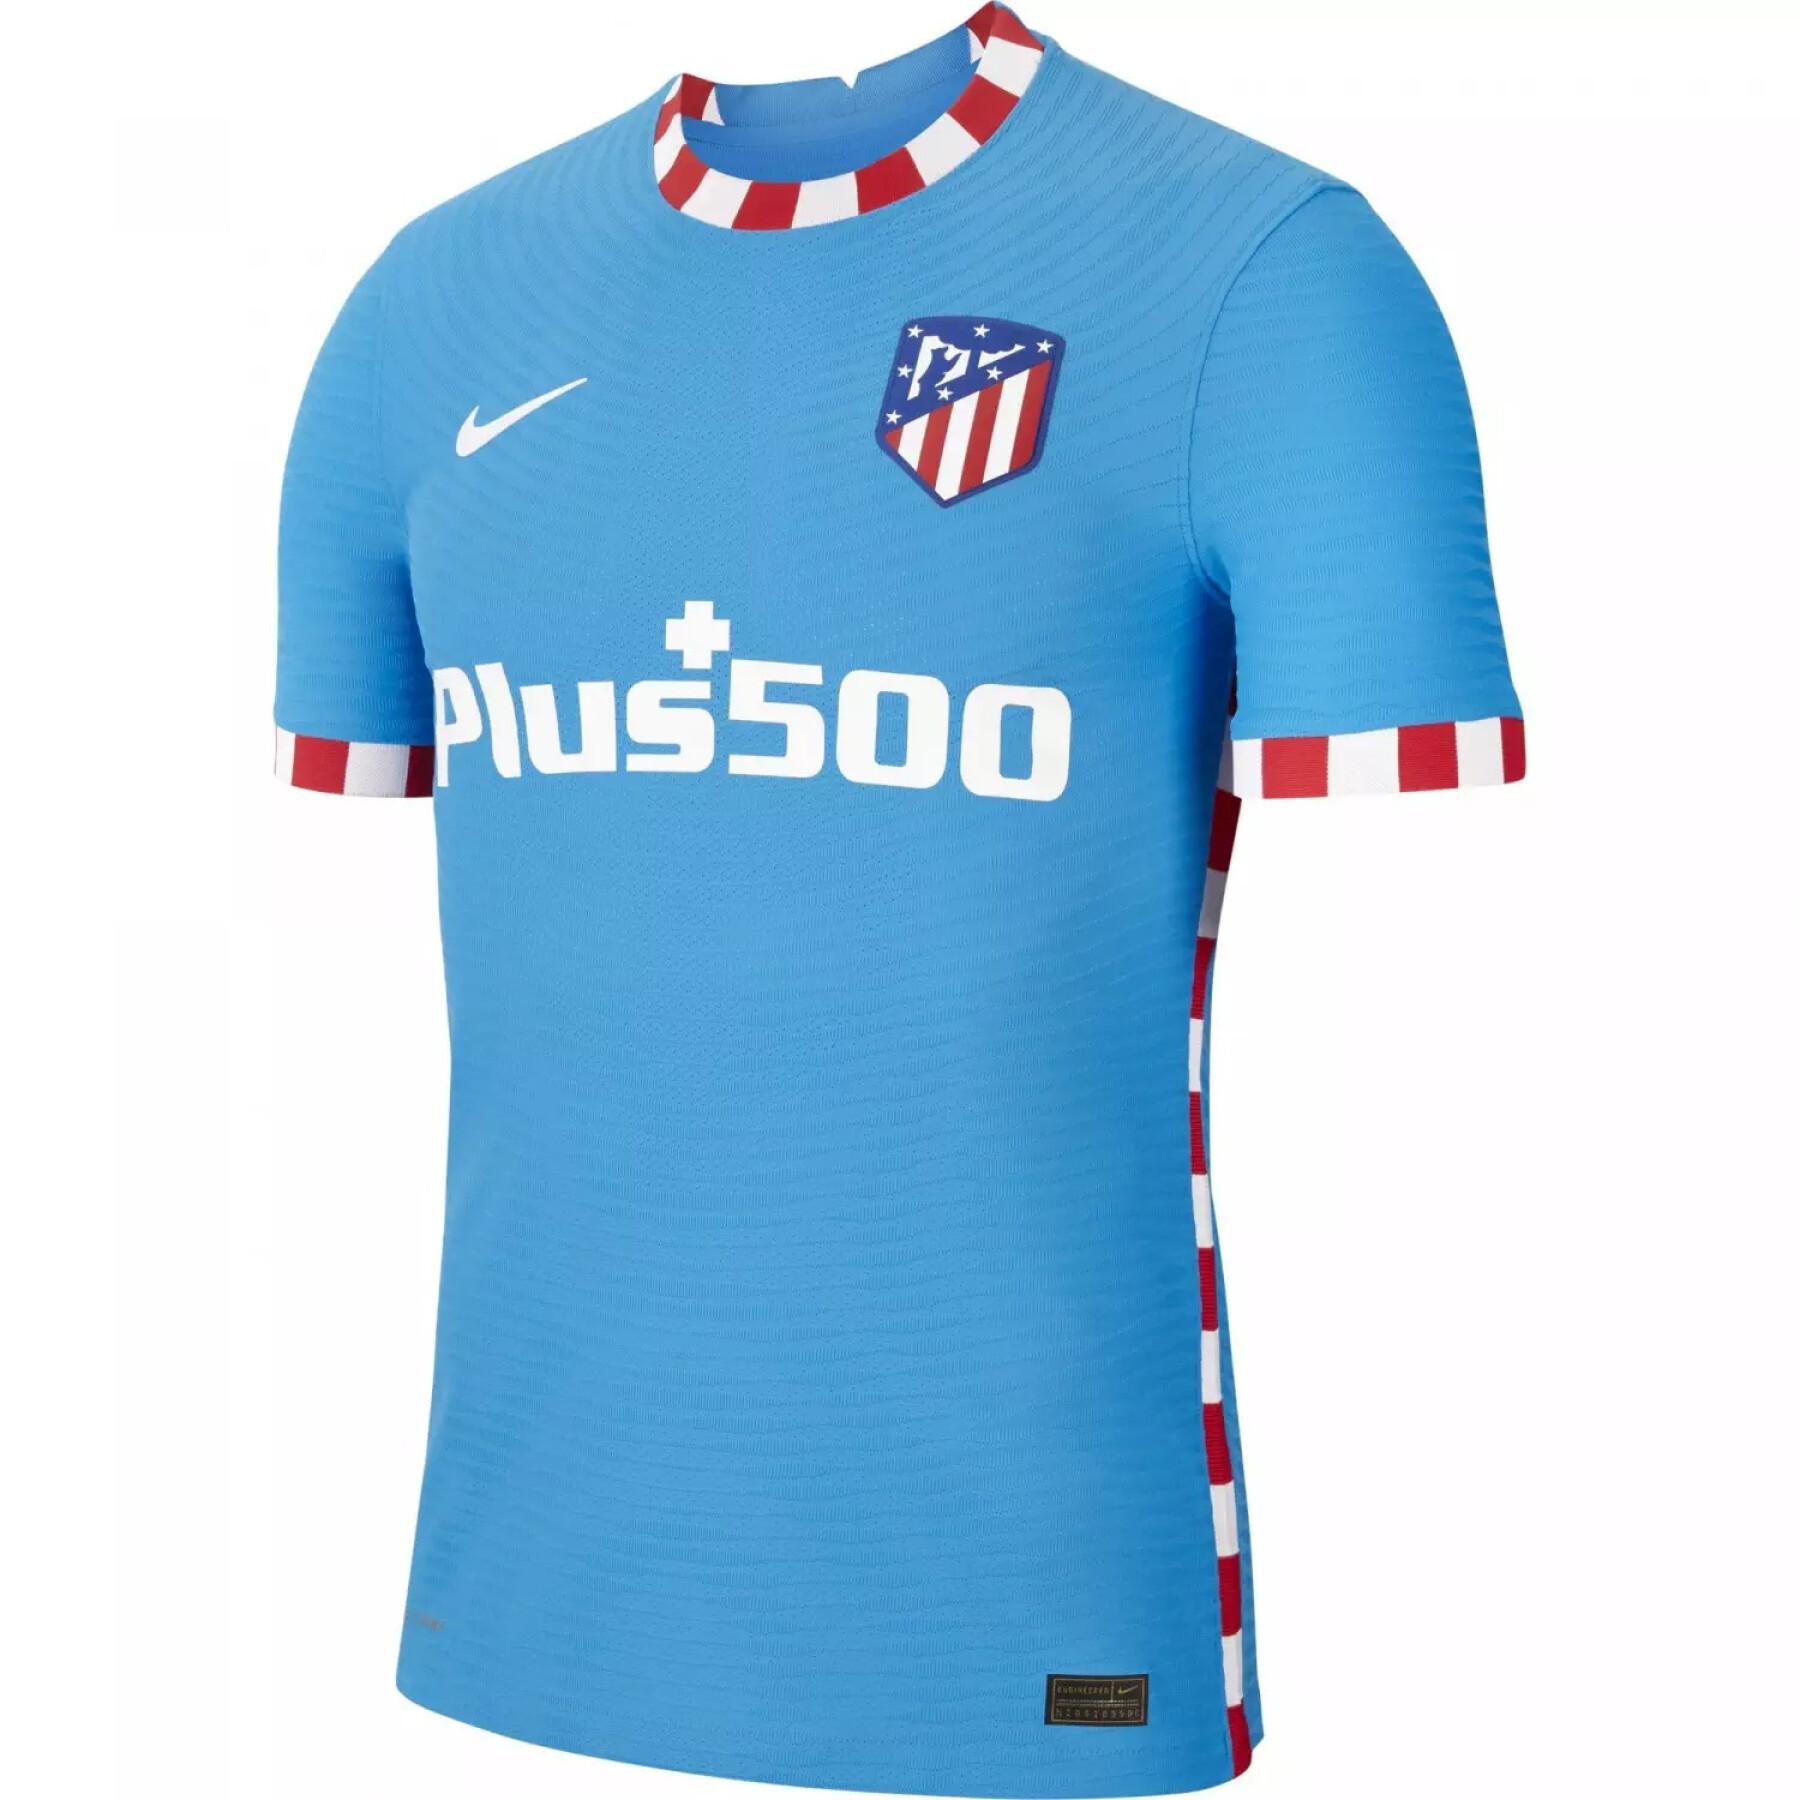 Autentyczna trzecia koszulka Atlético Madrid 2021/22